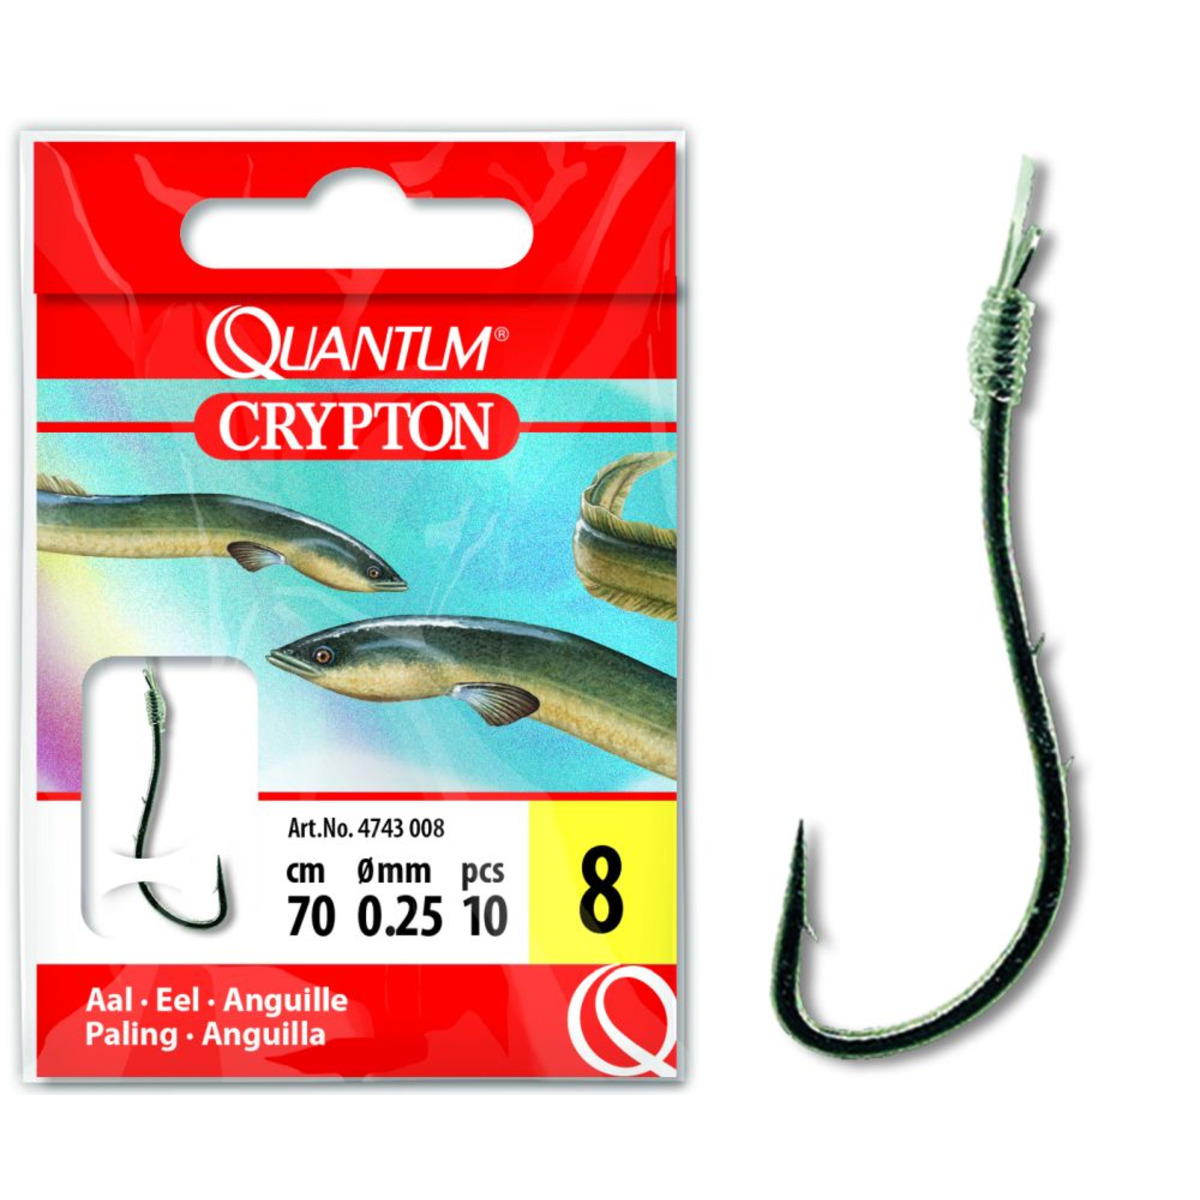 Quantum Crypton Eel Hook-to-nylon - 4